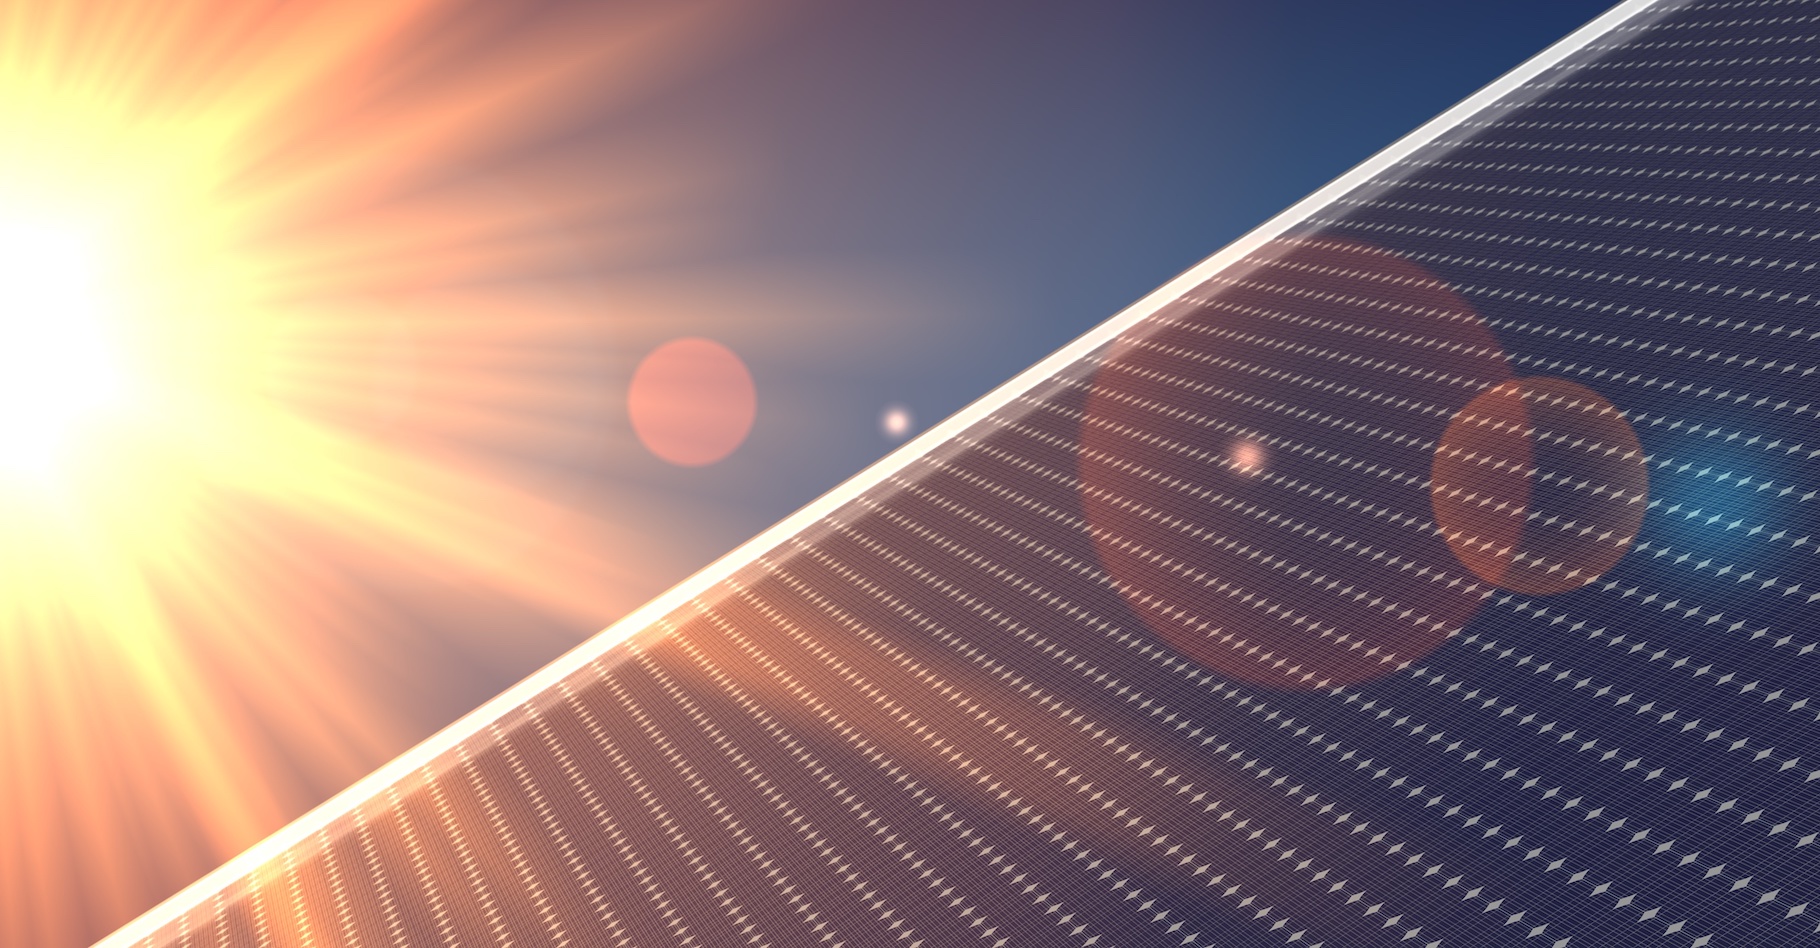 Des chercheurs australiens soulignent l’importance de rendre plus durable la production d’aluminium alors que la demande devrait exploser du fait de la forte croissance annoncée du marché du solaire photovoltaïque. © vegefox.com, Adobe Stock